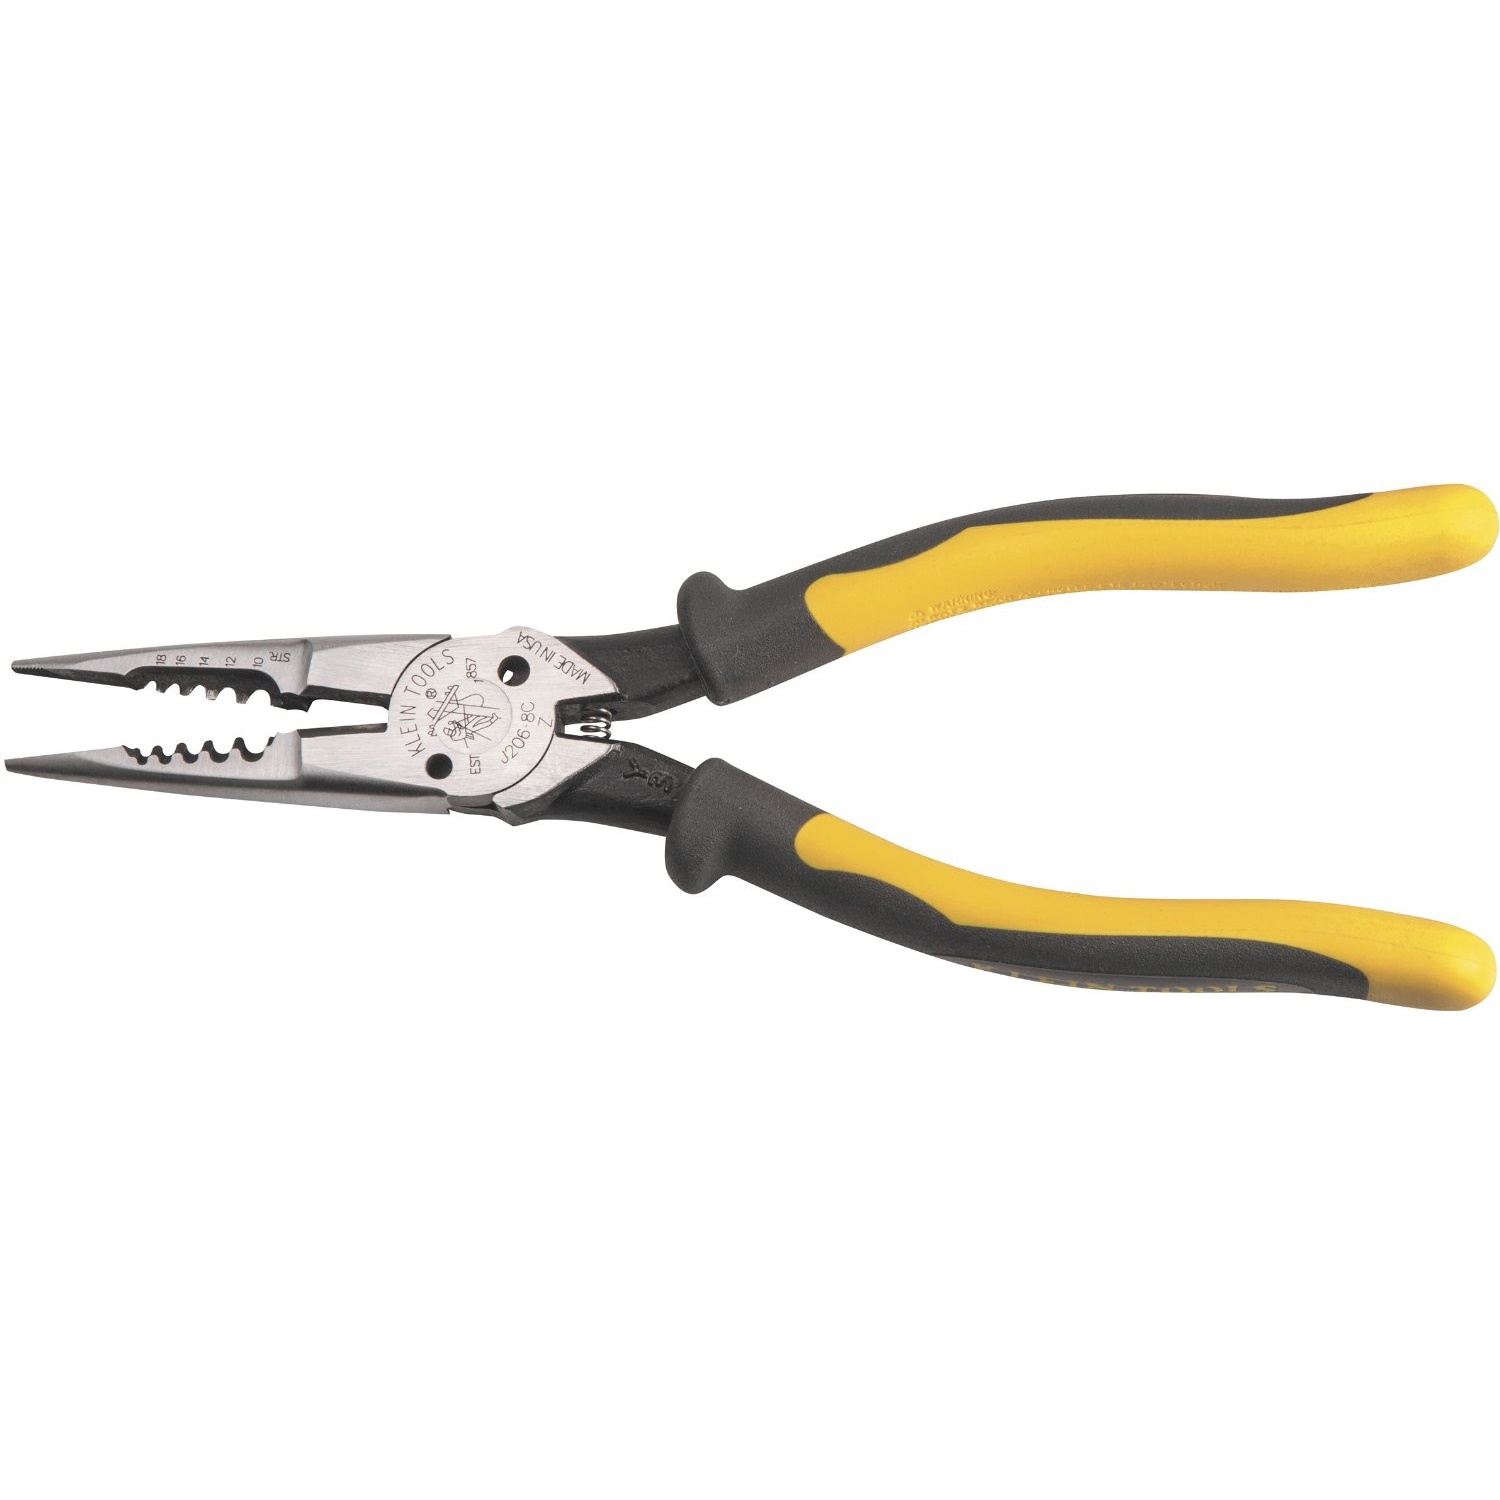 klein tools pliers